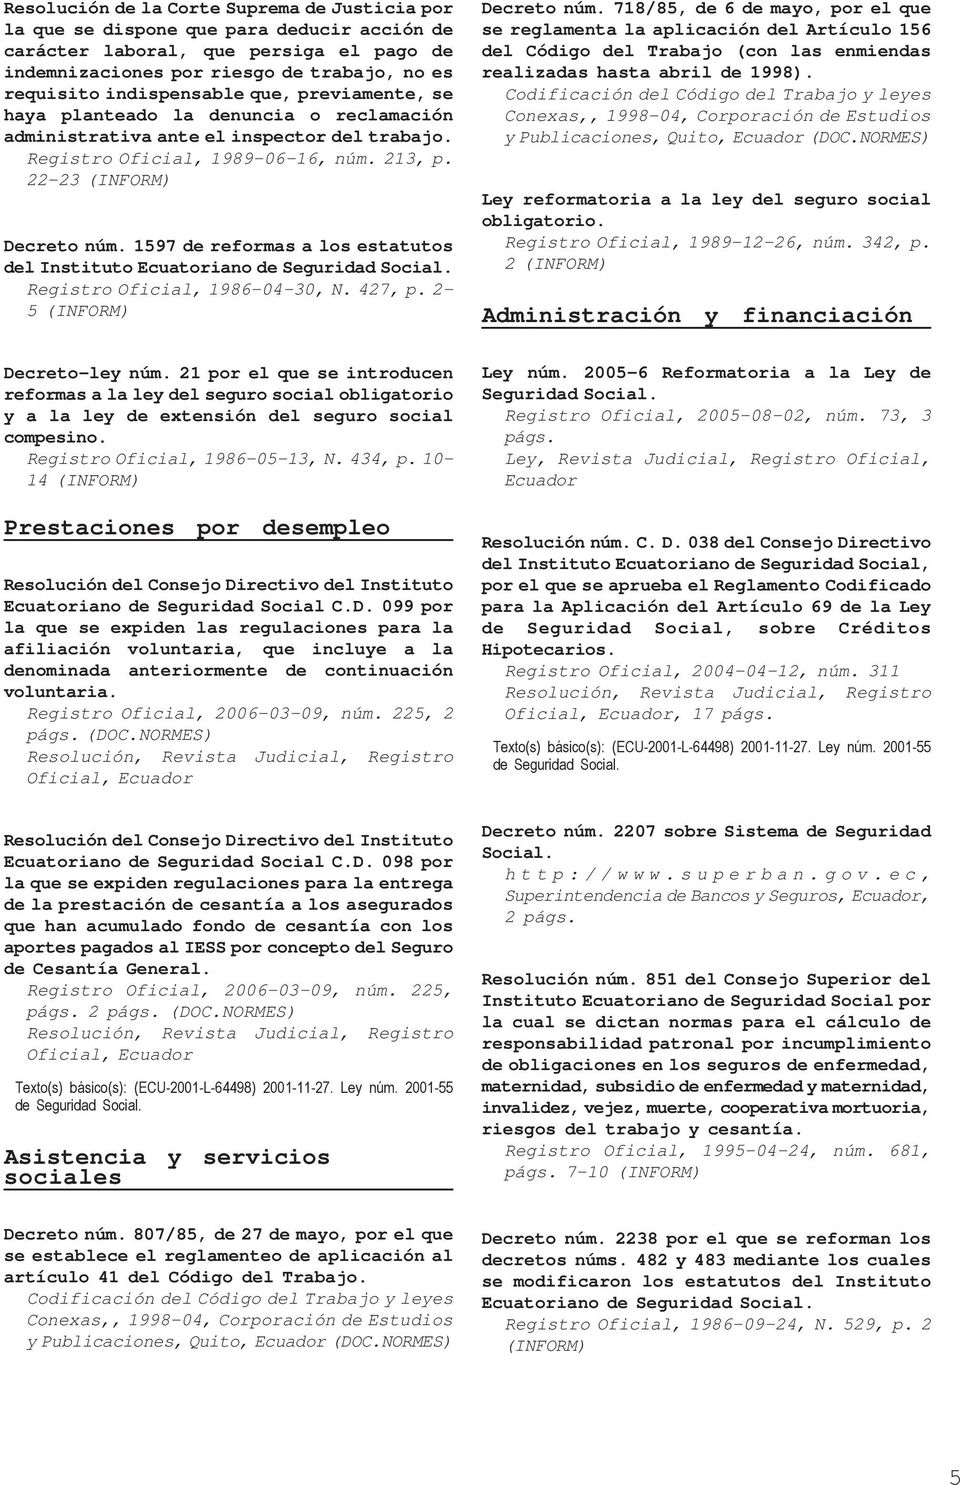 213, p. 22-23 del Instituto Ecuatoriano de Las modificaciones se refieren a la devolución del fondo de reserva a los afiliados que acrediten tres o más aportaciones acumuladas anuales.